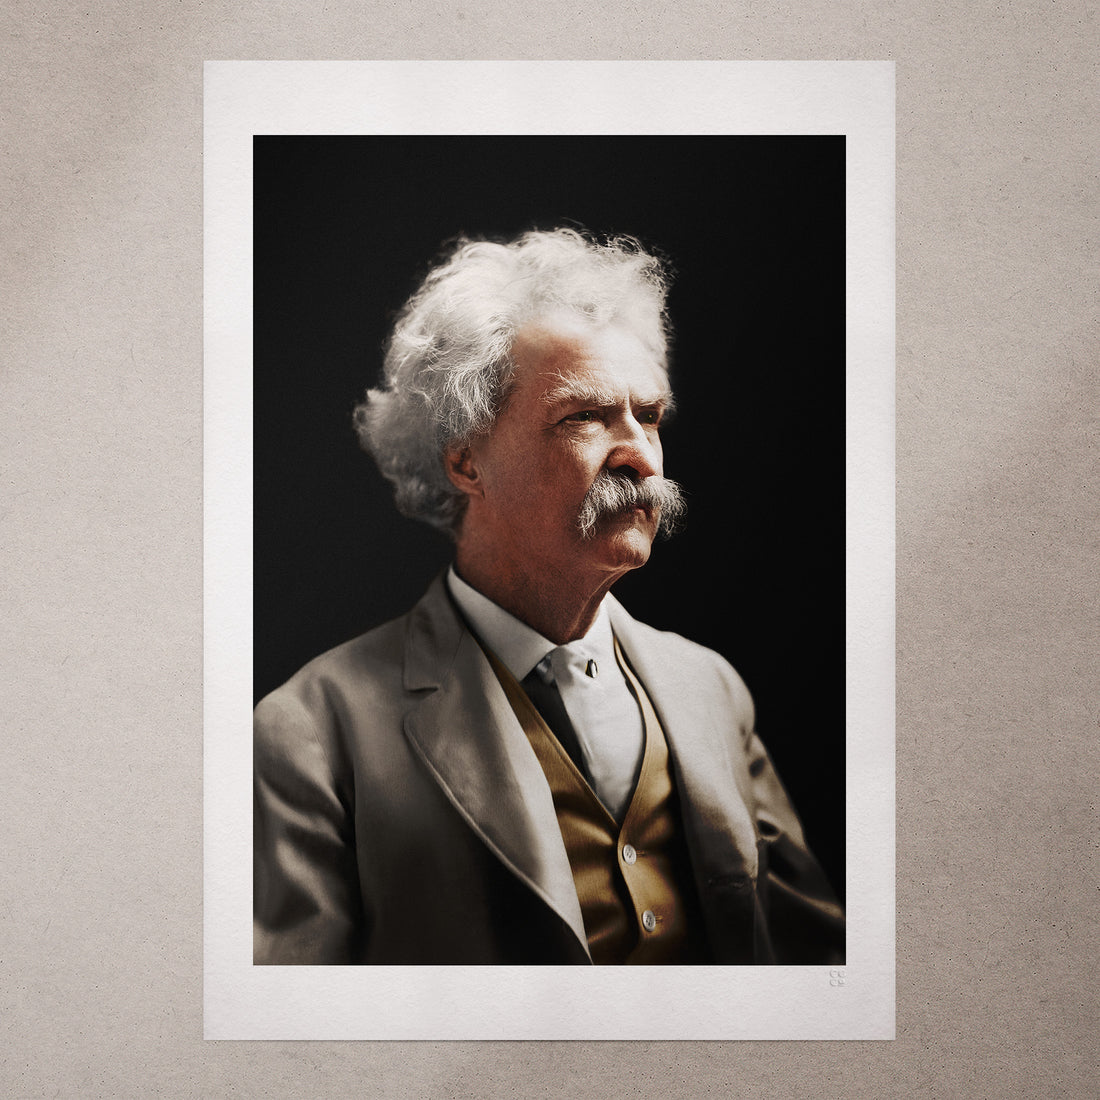 Mark Twain by Jordan J. Lloyd, 1906